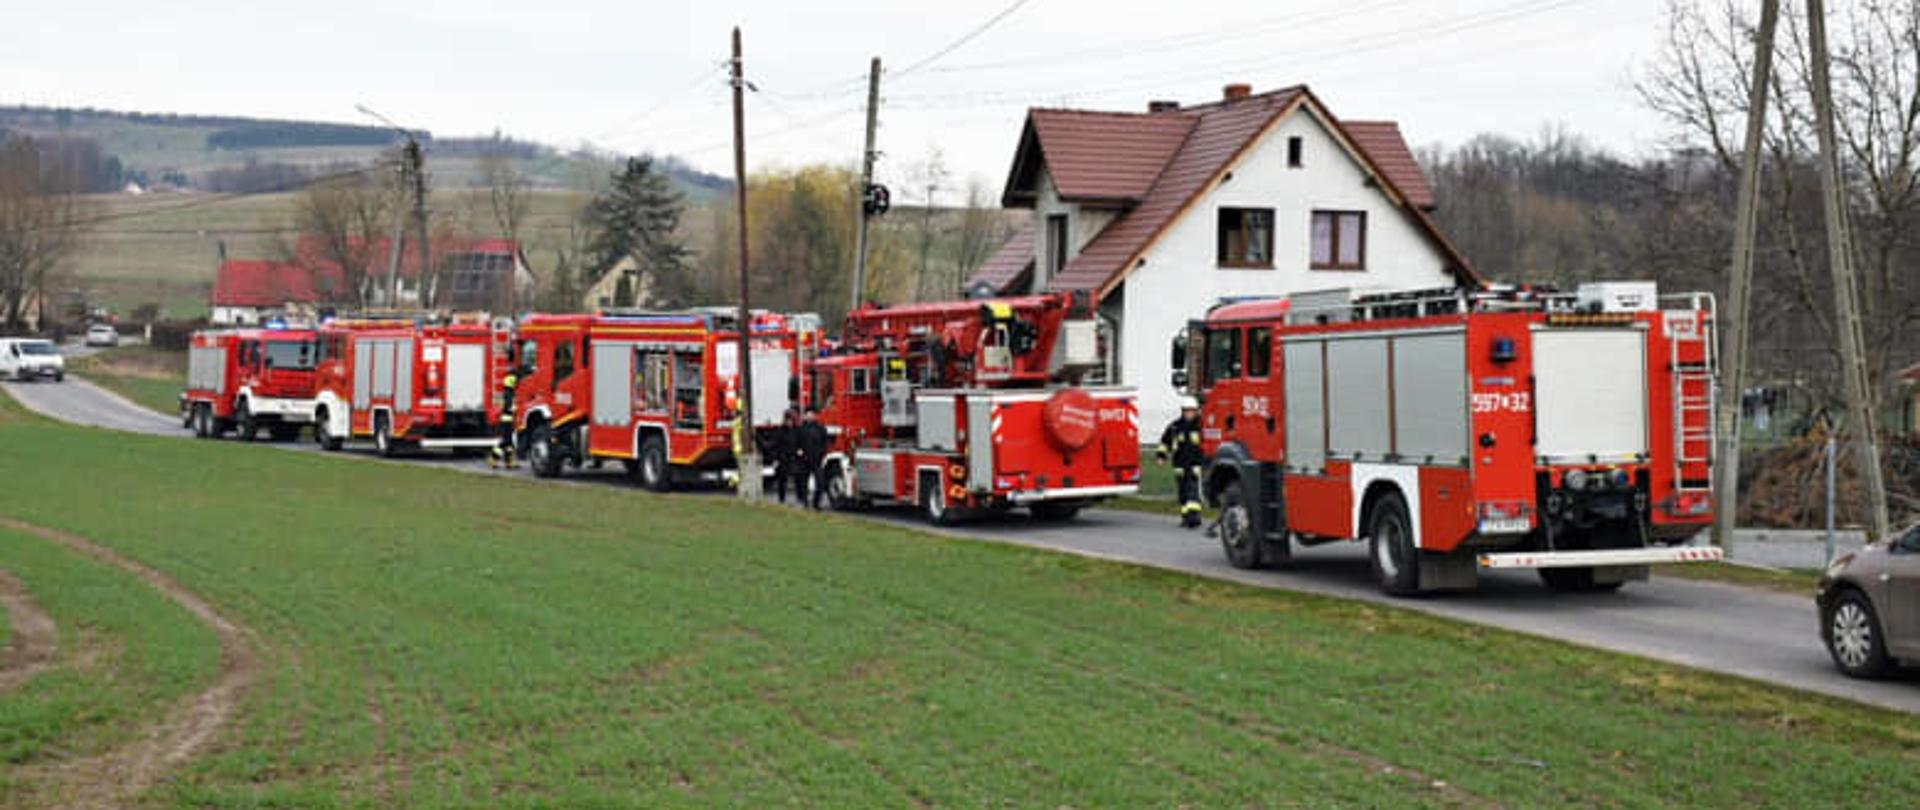 Wozy strażackie na drodze przy budynku w Lutomierzu